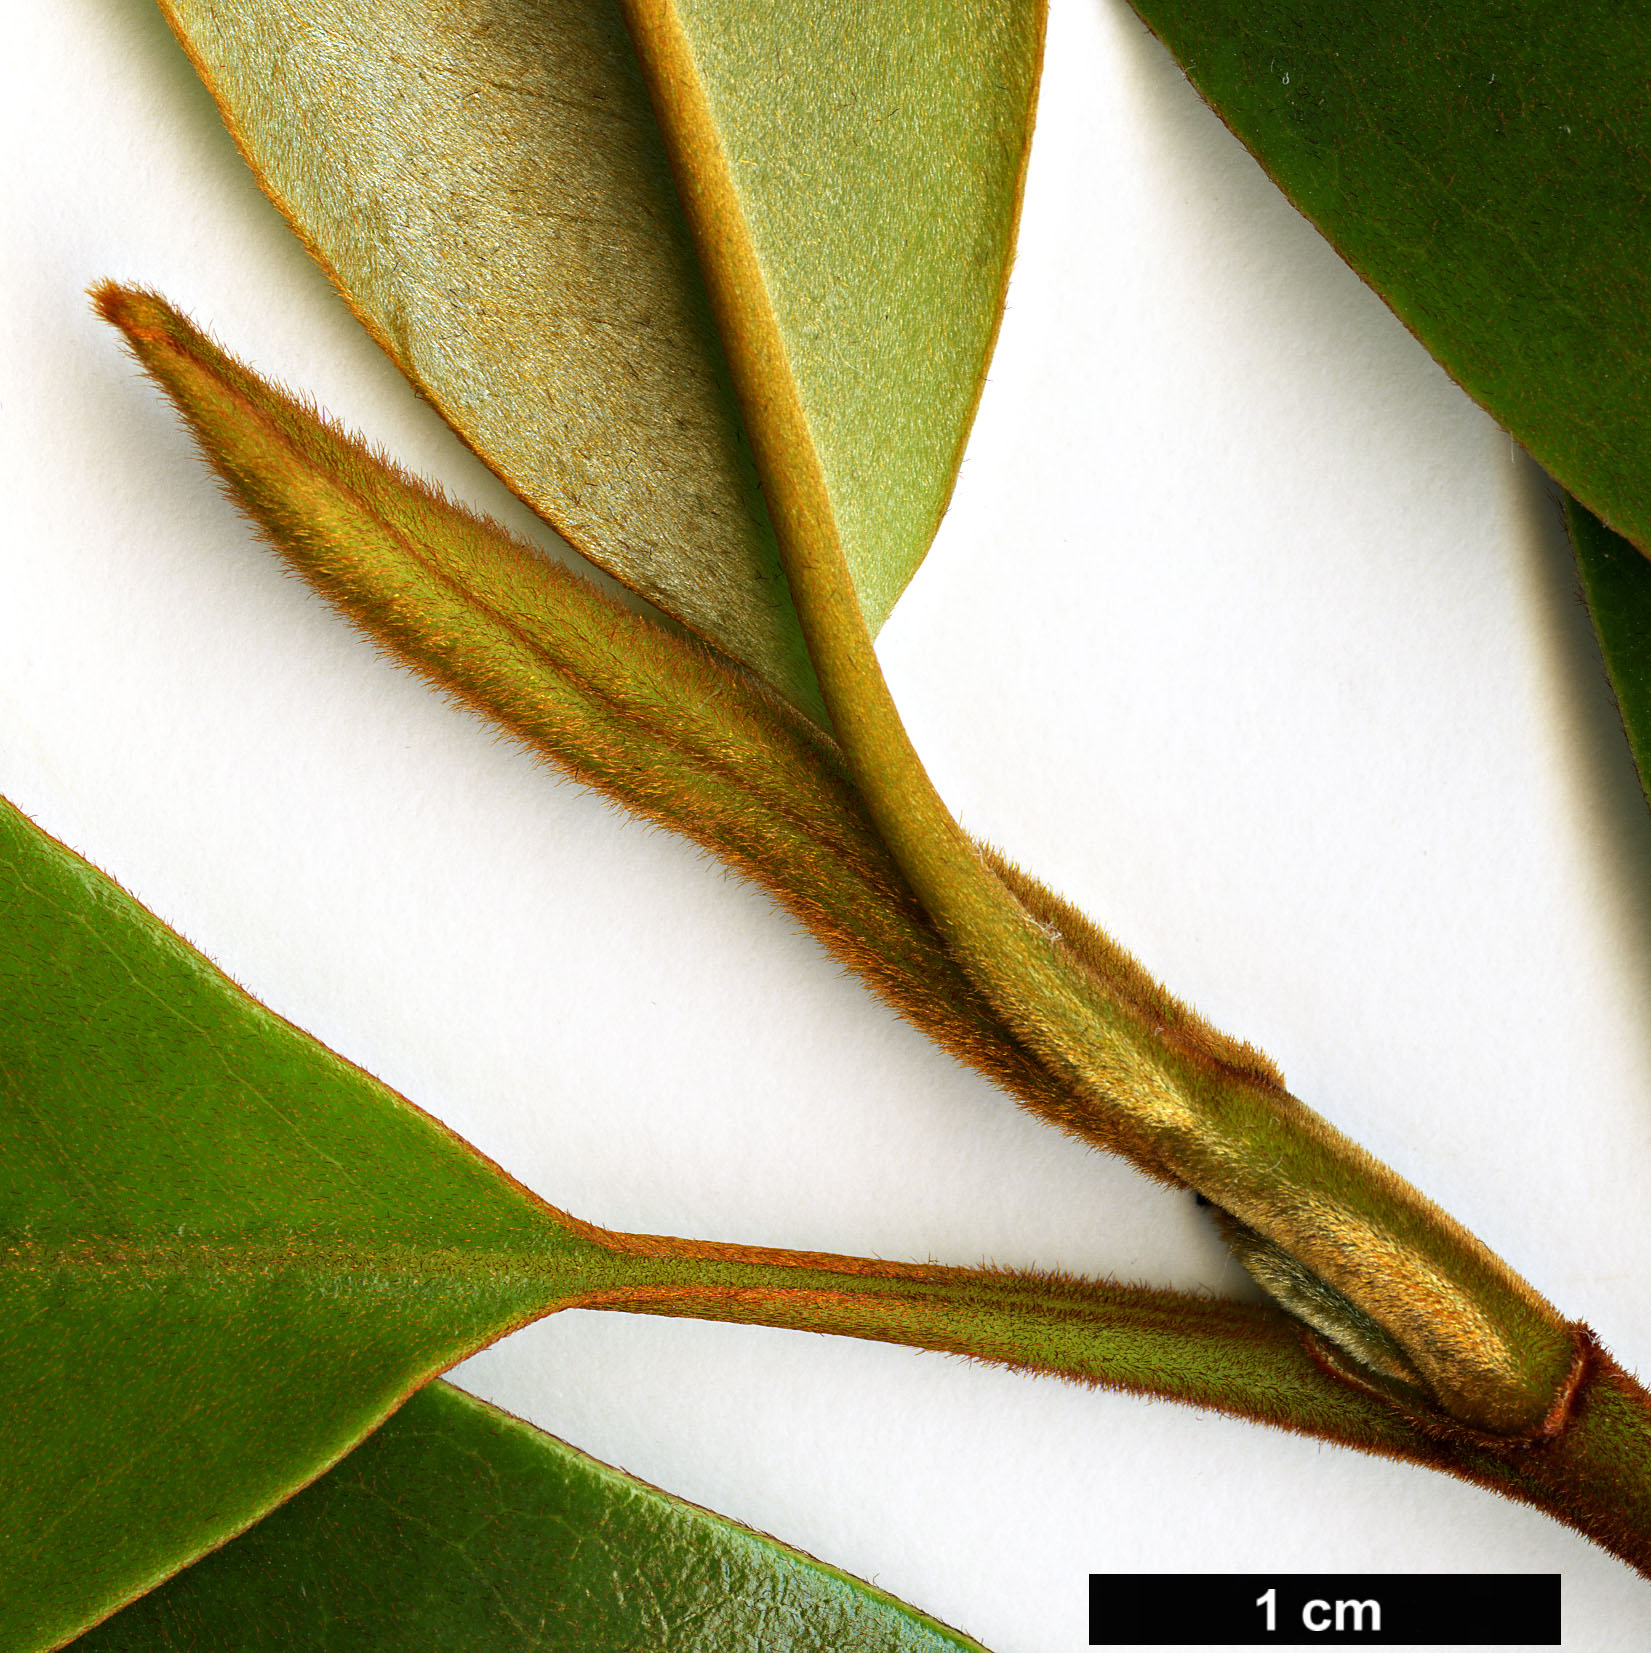 High resolution image: Family: Magnoliaceae - Genus: Magnolia - Taxon: macclurei - SpeciesSub: var. sublanea